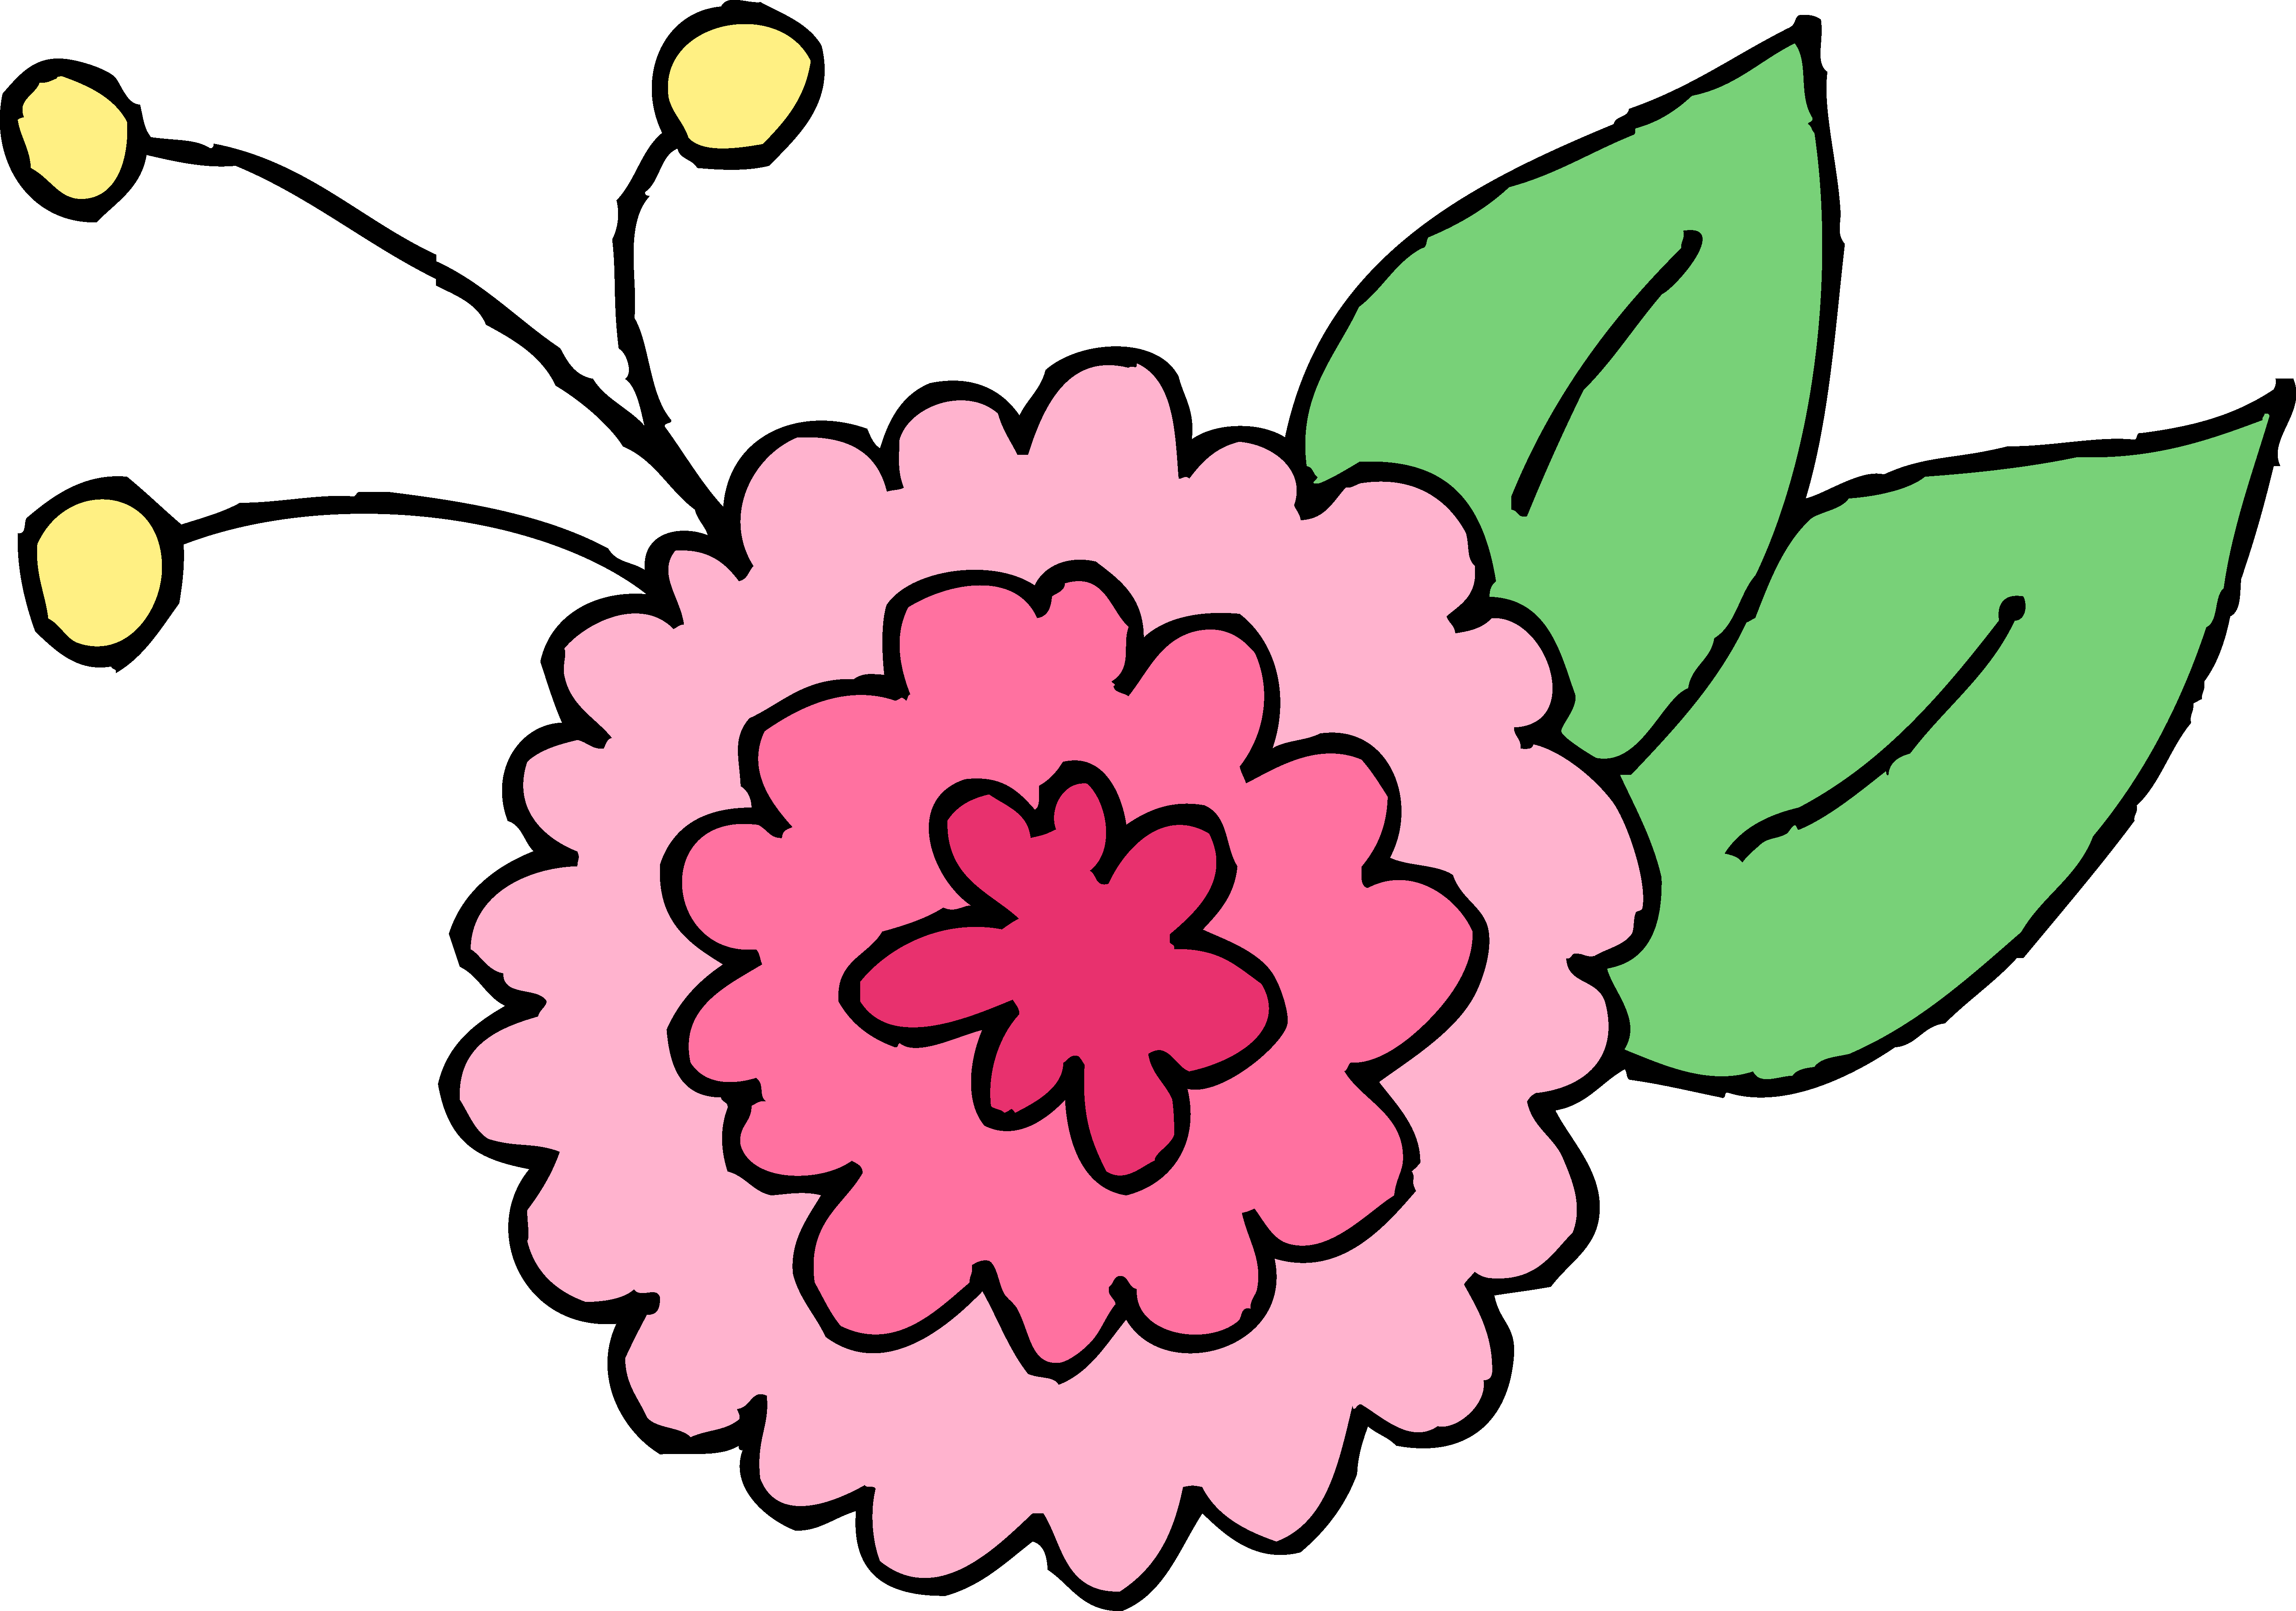 Chrysanthemum clipart #3, Download drawings